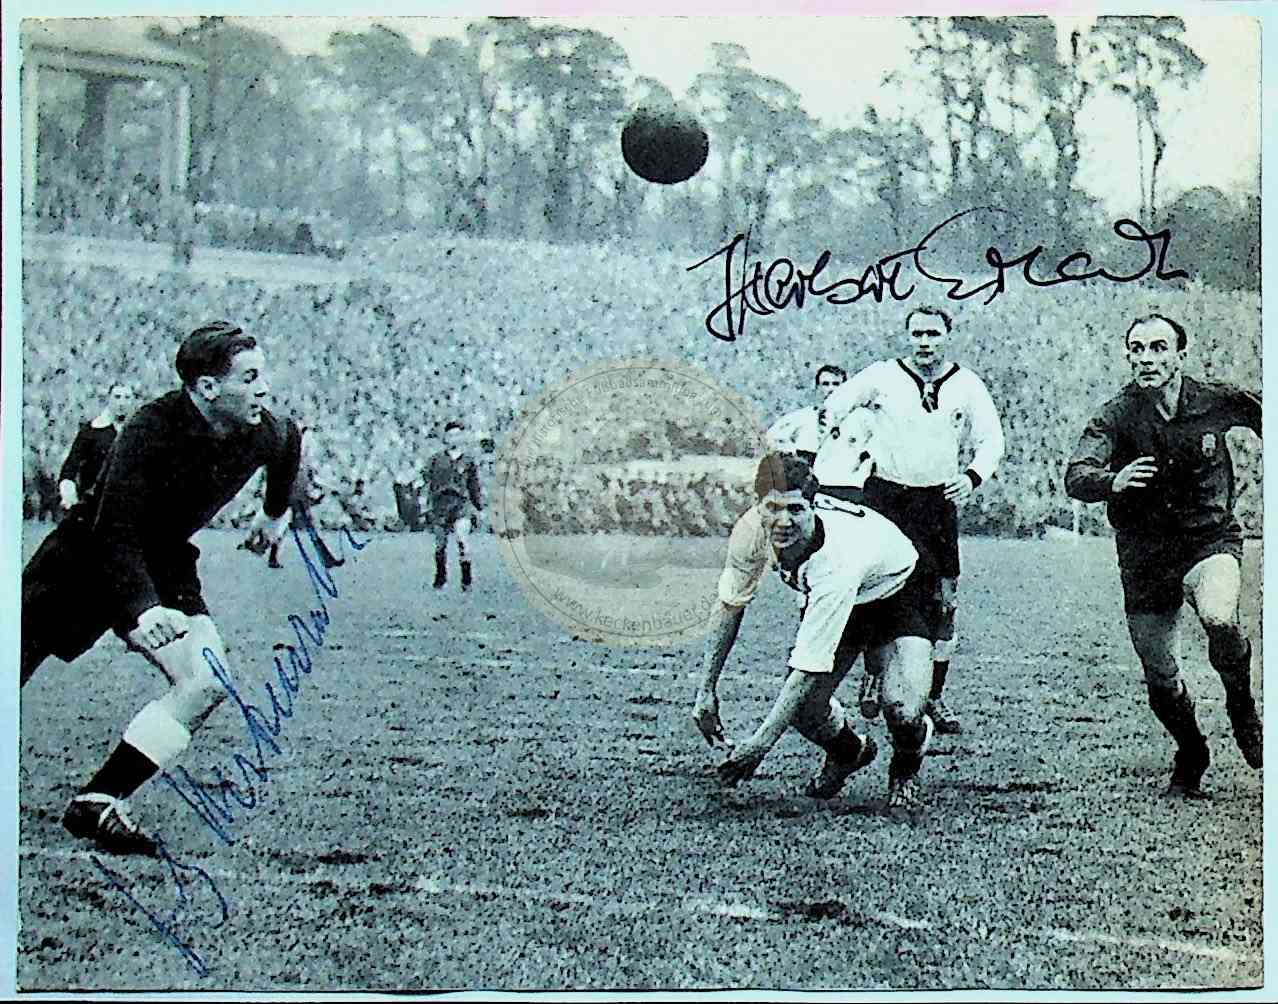 Bild aus dem Spiel Deutschland gegen Spanien am 19.03.1958 in Frankfurt a.M. mit original Autogrammen